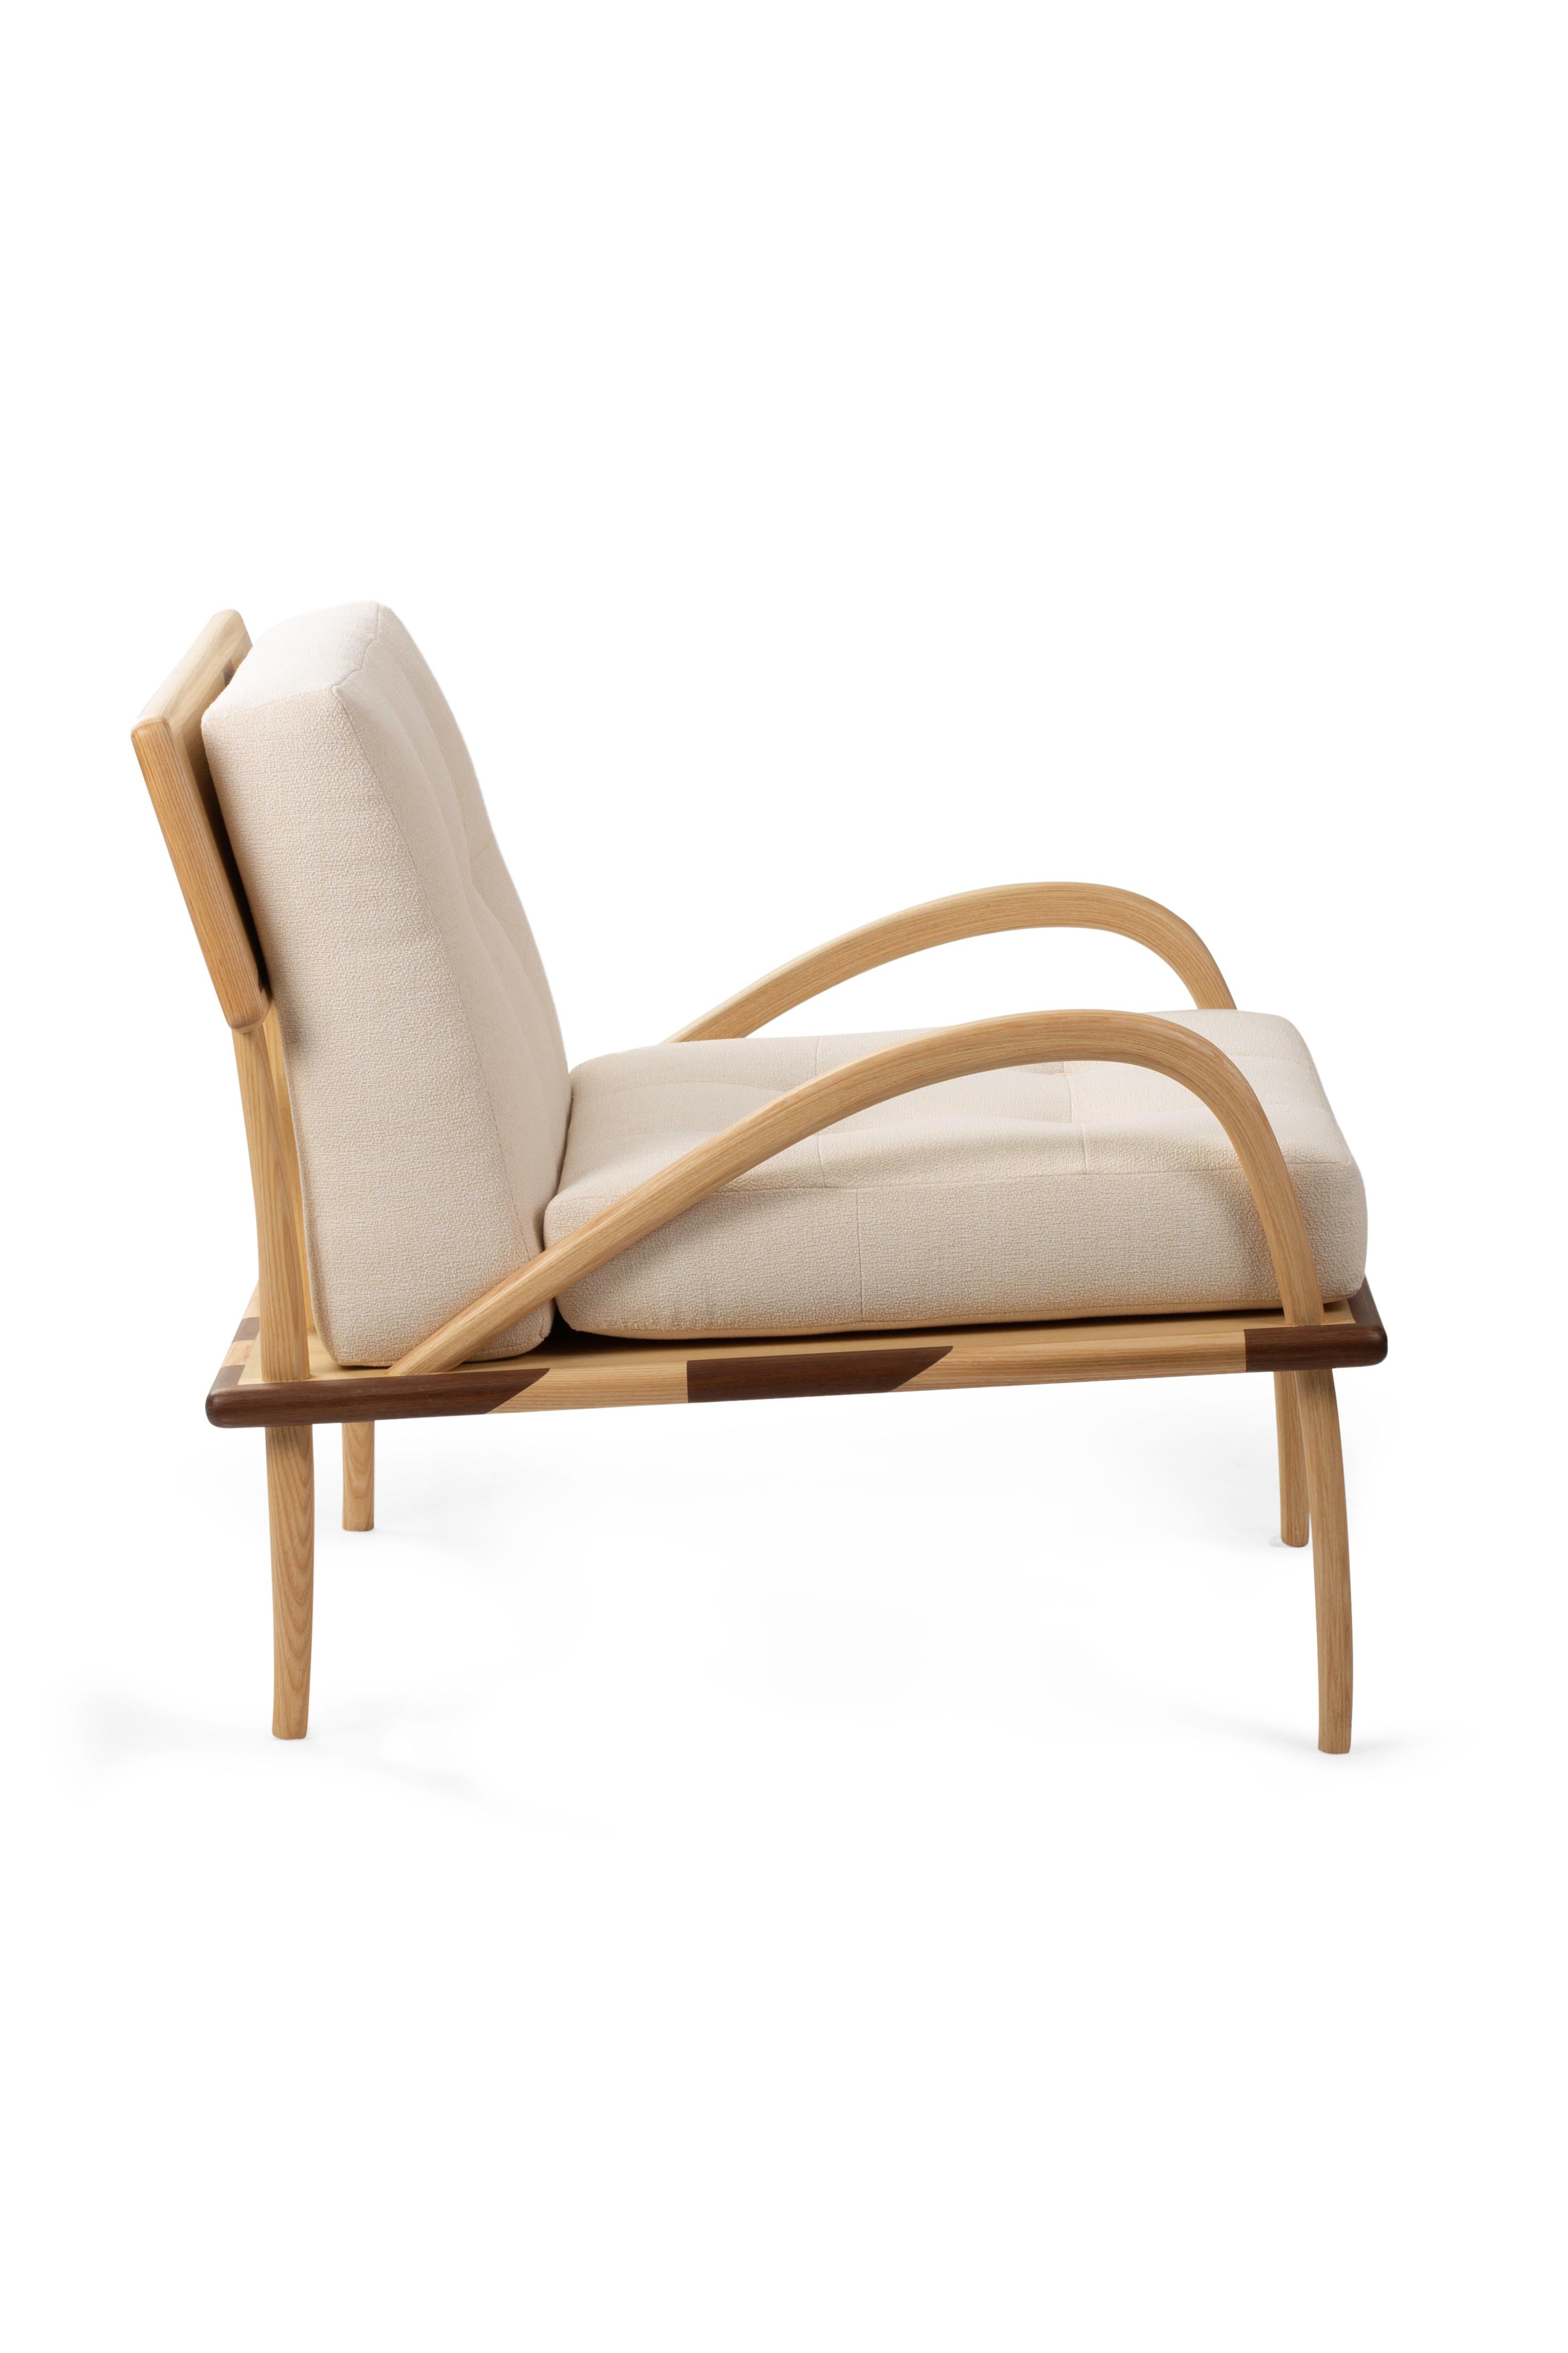 Romanza ist ein Sofa, das Zuneigungsdesign neu definiert und moderne und zeitgenössische Designstile mit der Erinnerung an alte marokkanische Sitzmöbel verbindet. 
Das Gestell von Romanza ist der Inbegriff feinster italienischer Schreinerei: Es wird